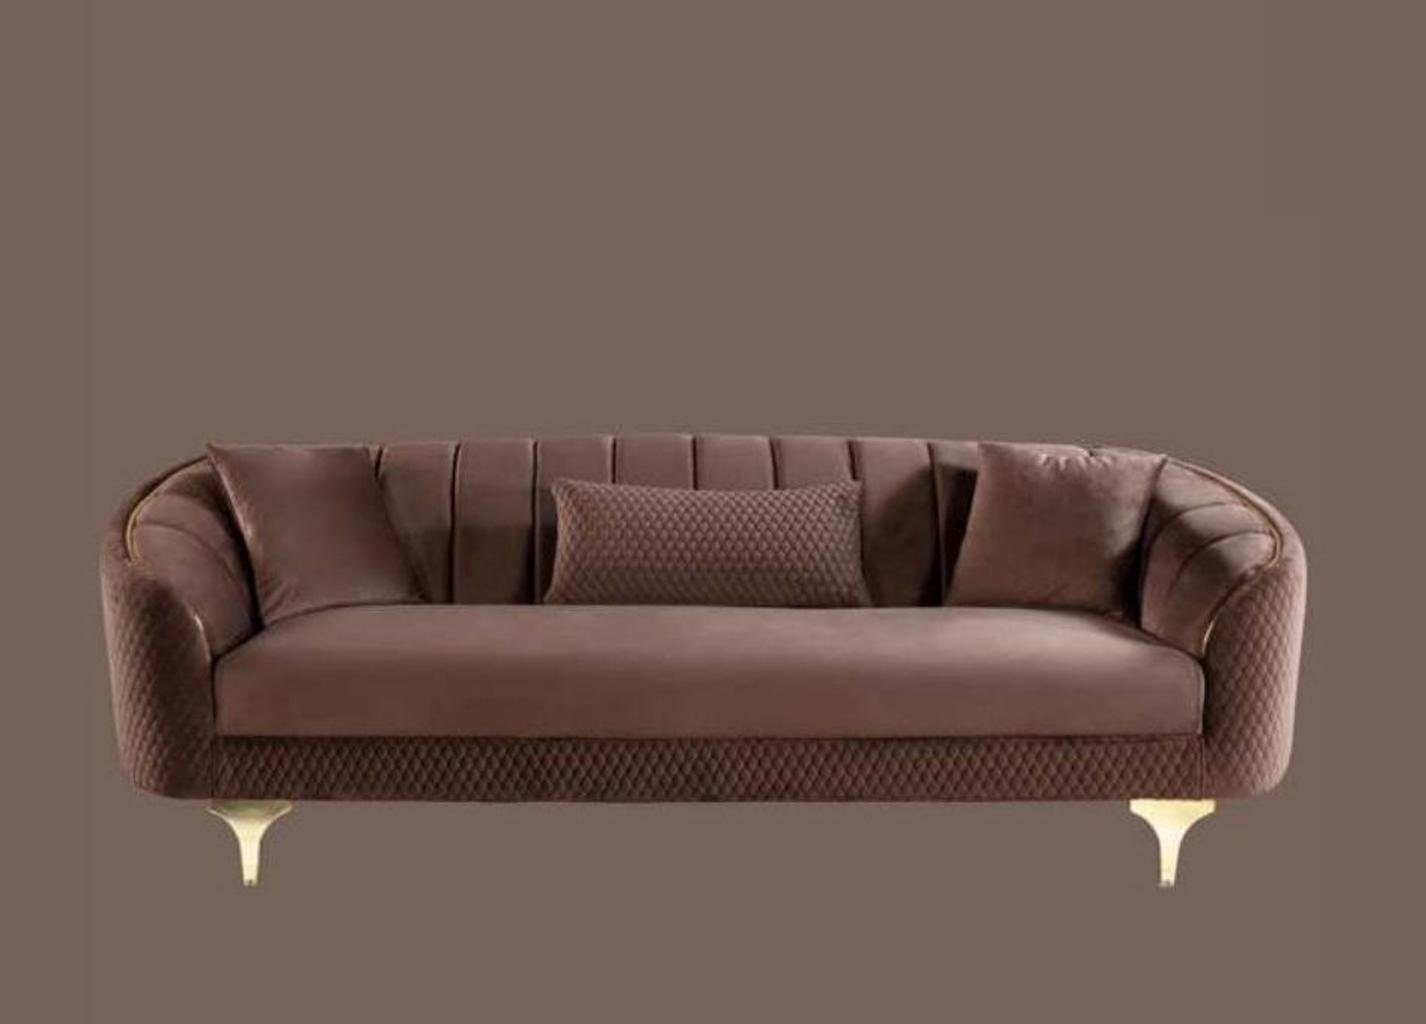 JVmoebel Sofa Wohnzimmer Sofa 3 Sitz Couchen Sofas Gepolsterte Couch, Made in Europe